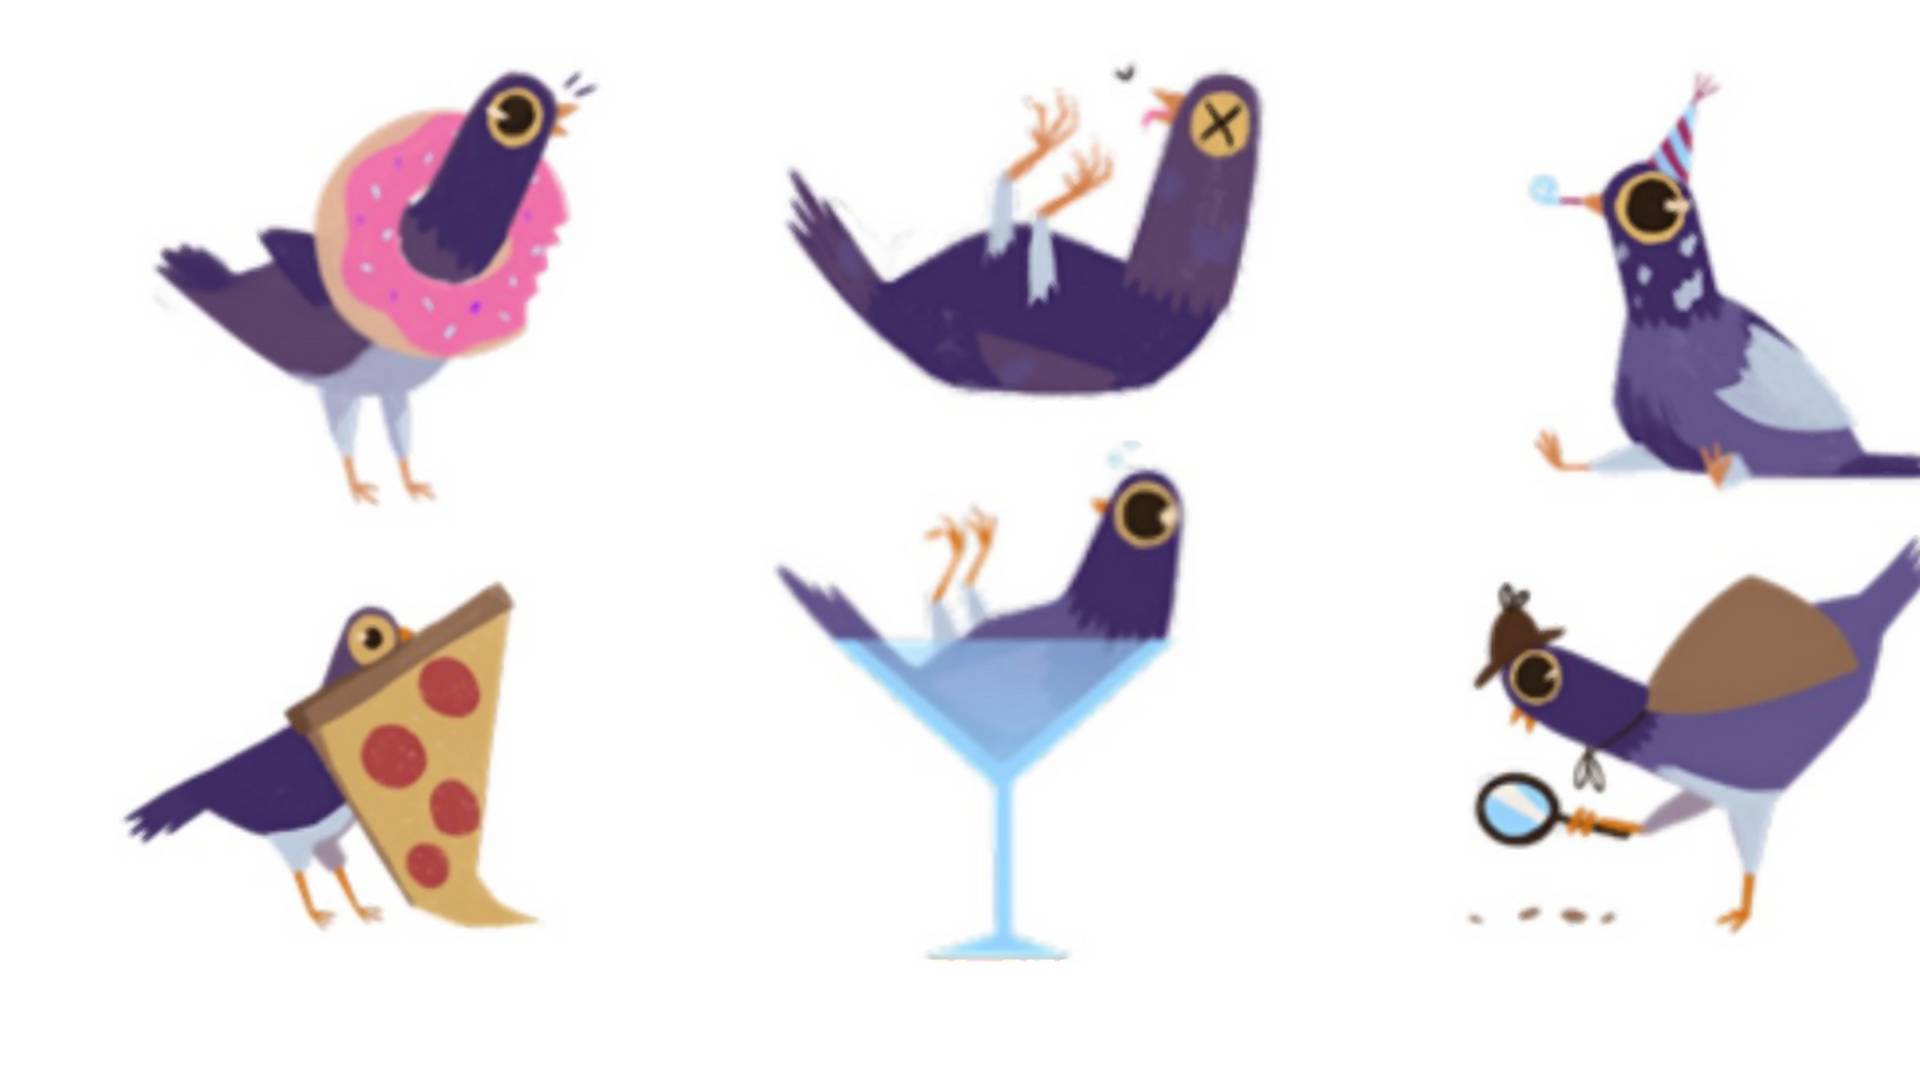 Nečakaný úspech: Na Facebook prileteli fialové holuby a spôsobili ošiaľ